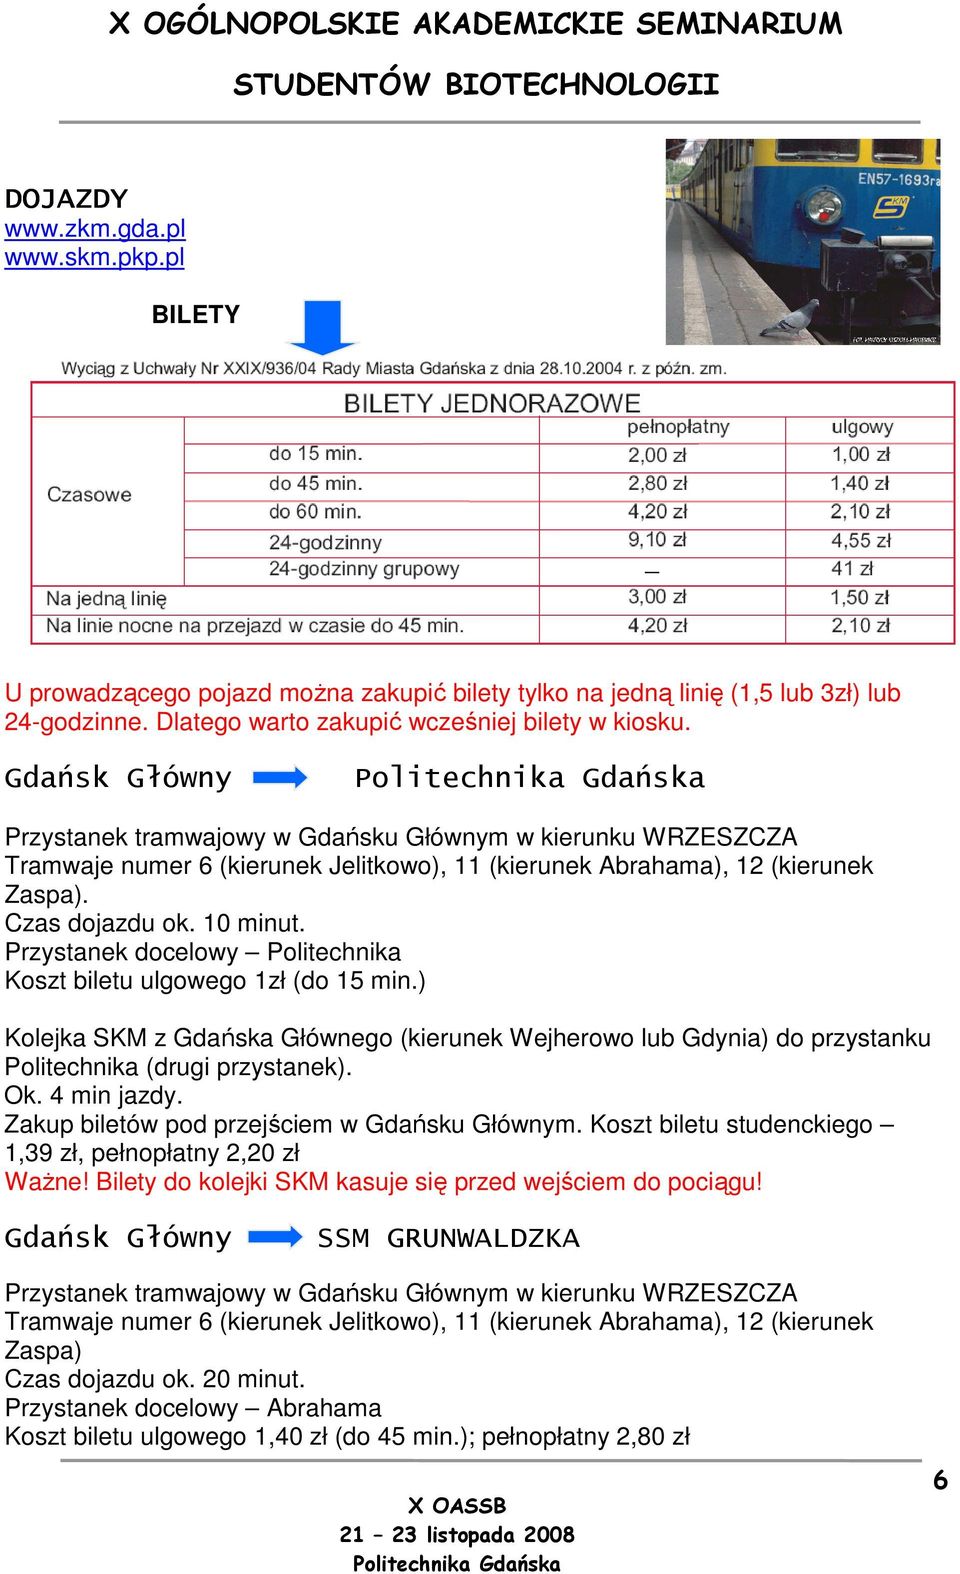 Przystanek docelowy Politechnika Koszt biletu ulgowego 1zł (do 15 min.) Kolejka SKM z Gdańska Głównego (kierunek Wejherowo lub Gdynia) do przystanku Politechnika (drugi przystanek). Ok. 4 min jazdy.